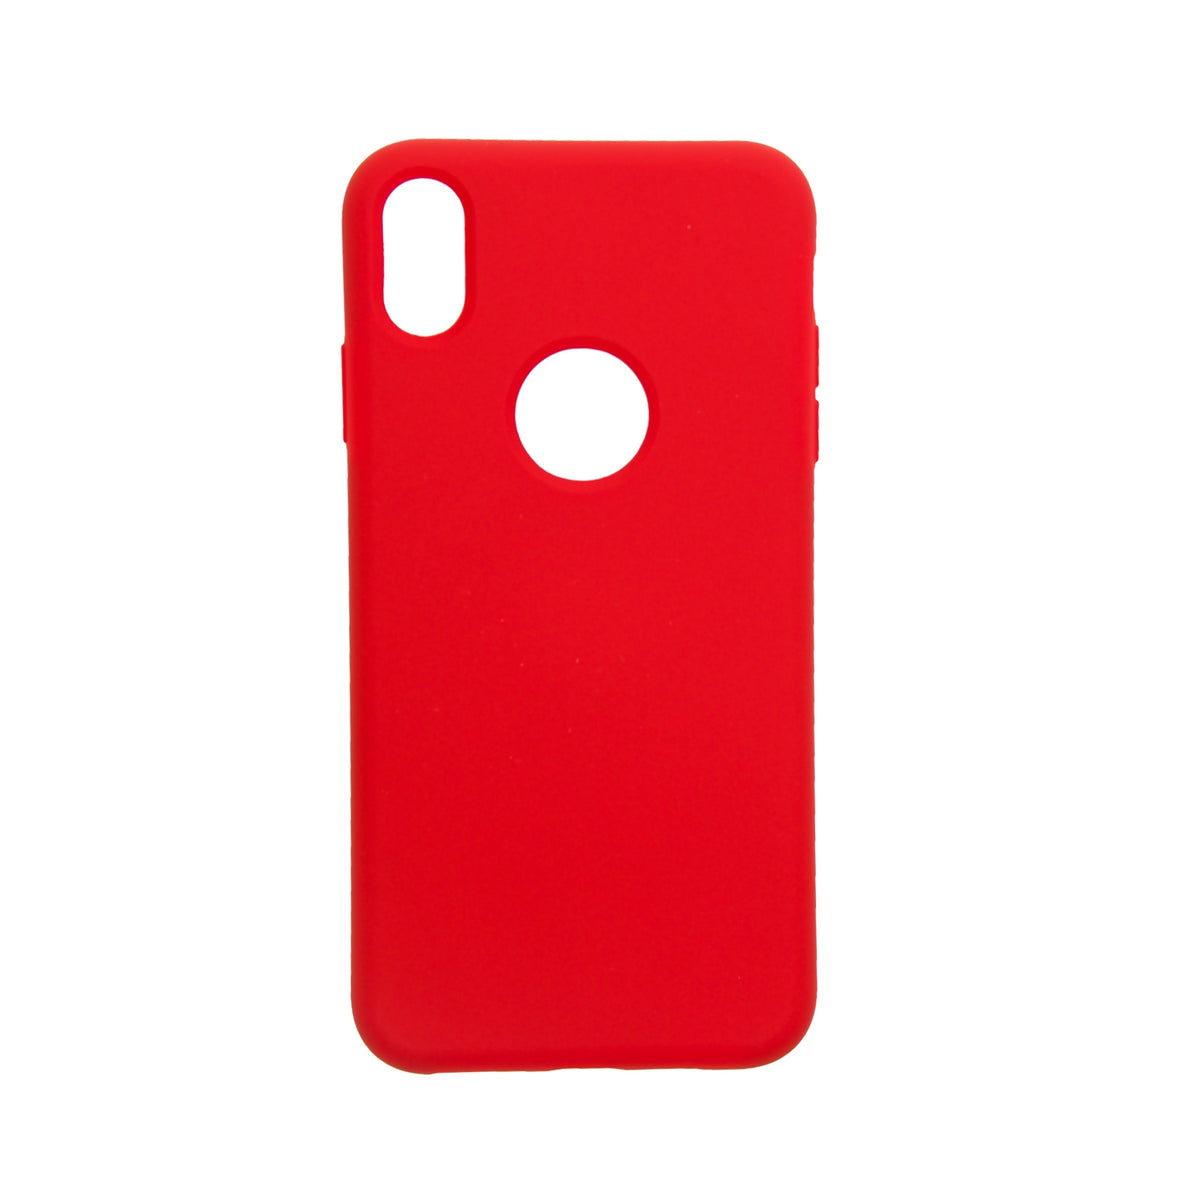 Estuche EL REY silicon rojo - iphone xs max